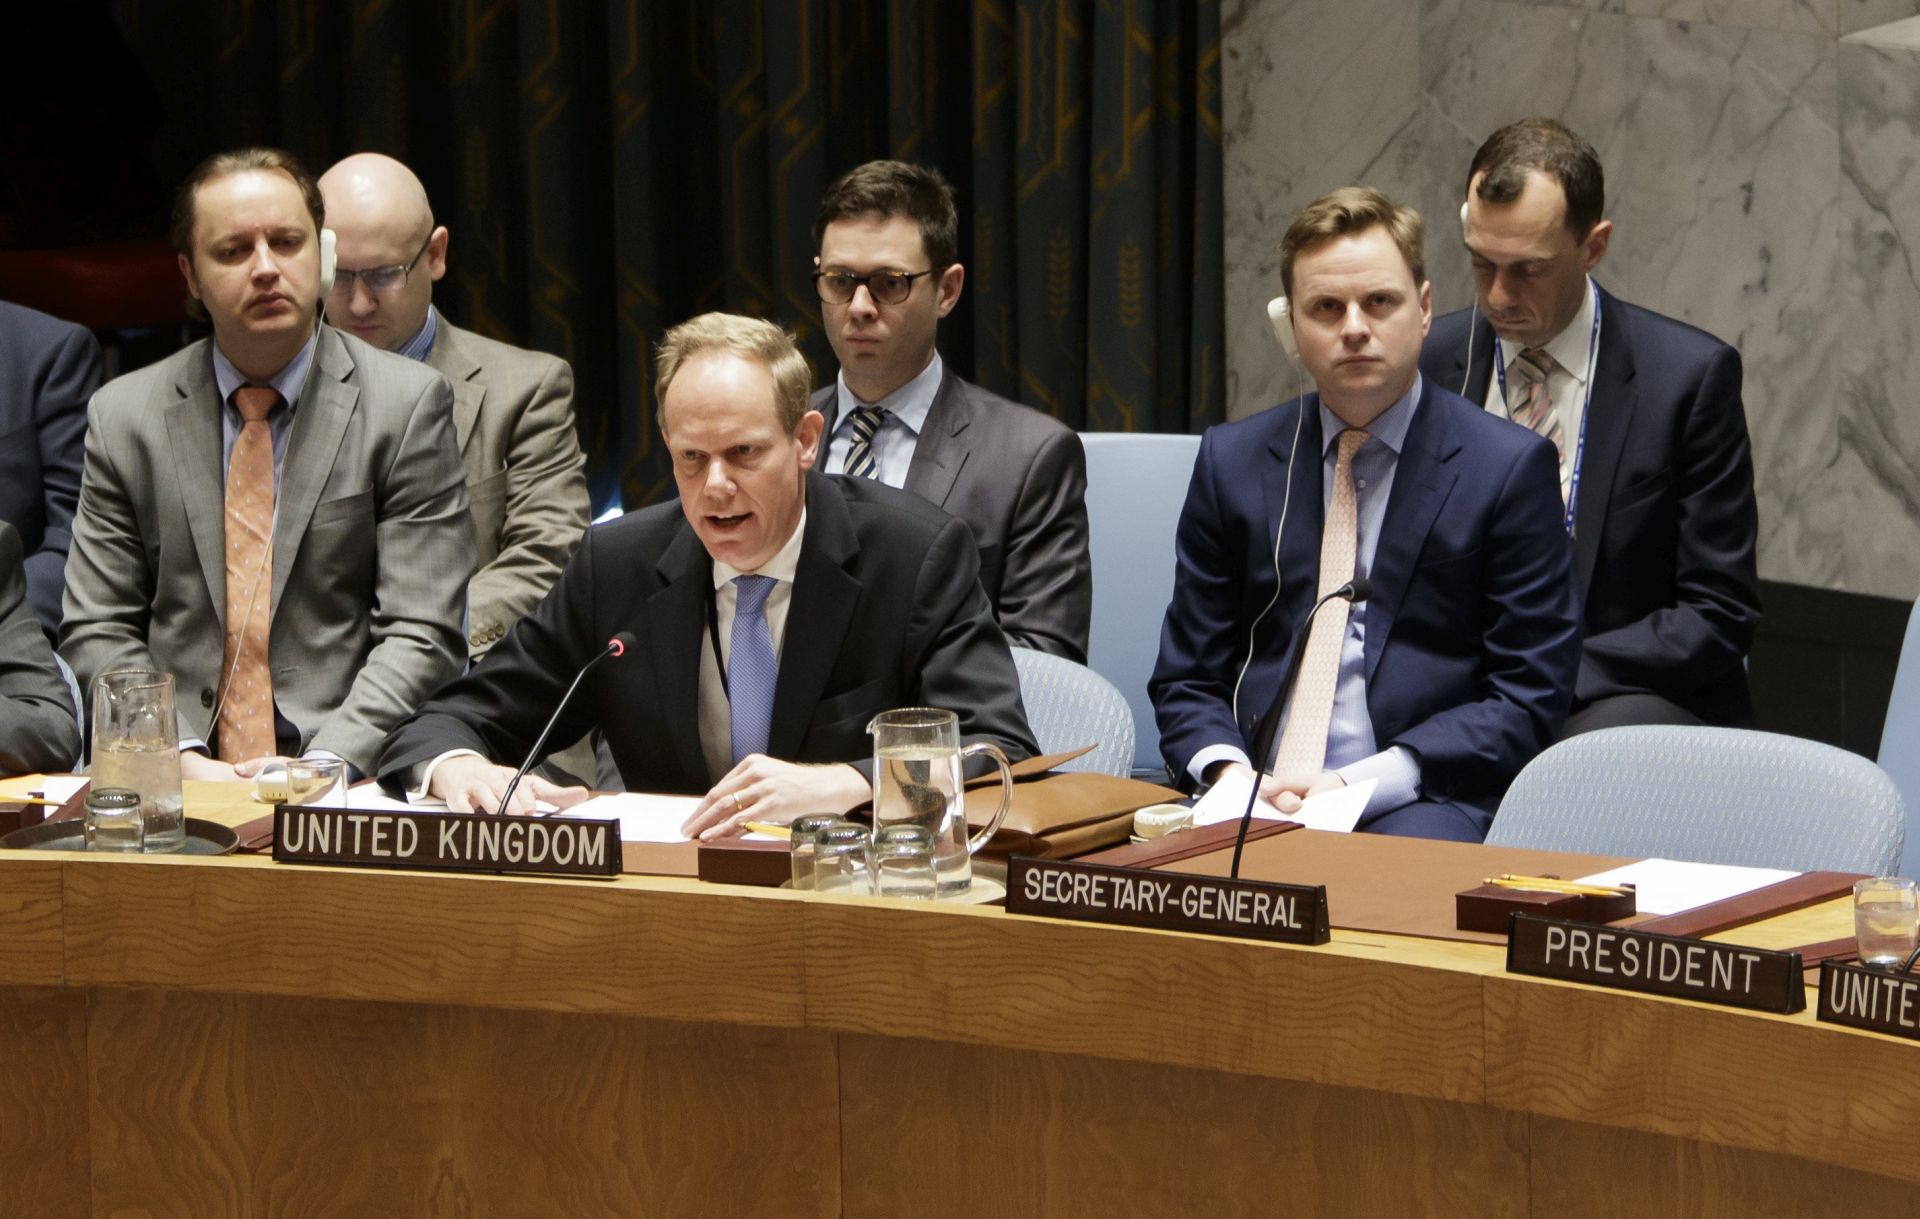 VIJEĆE SIGURNOSTI: Odgođeno glasovanje o rezoluciji o napadu u Siriji